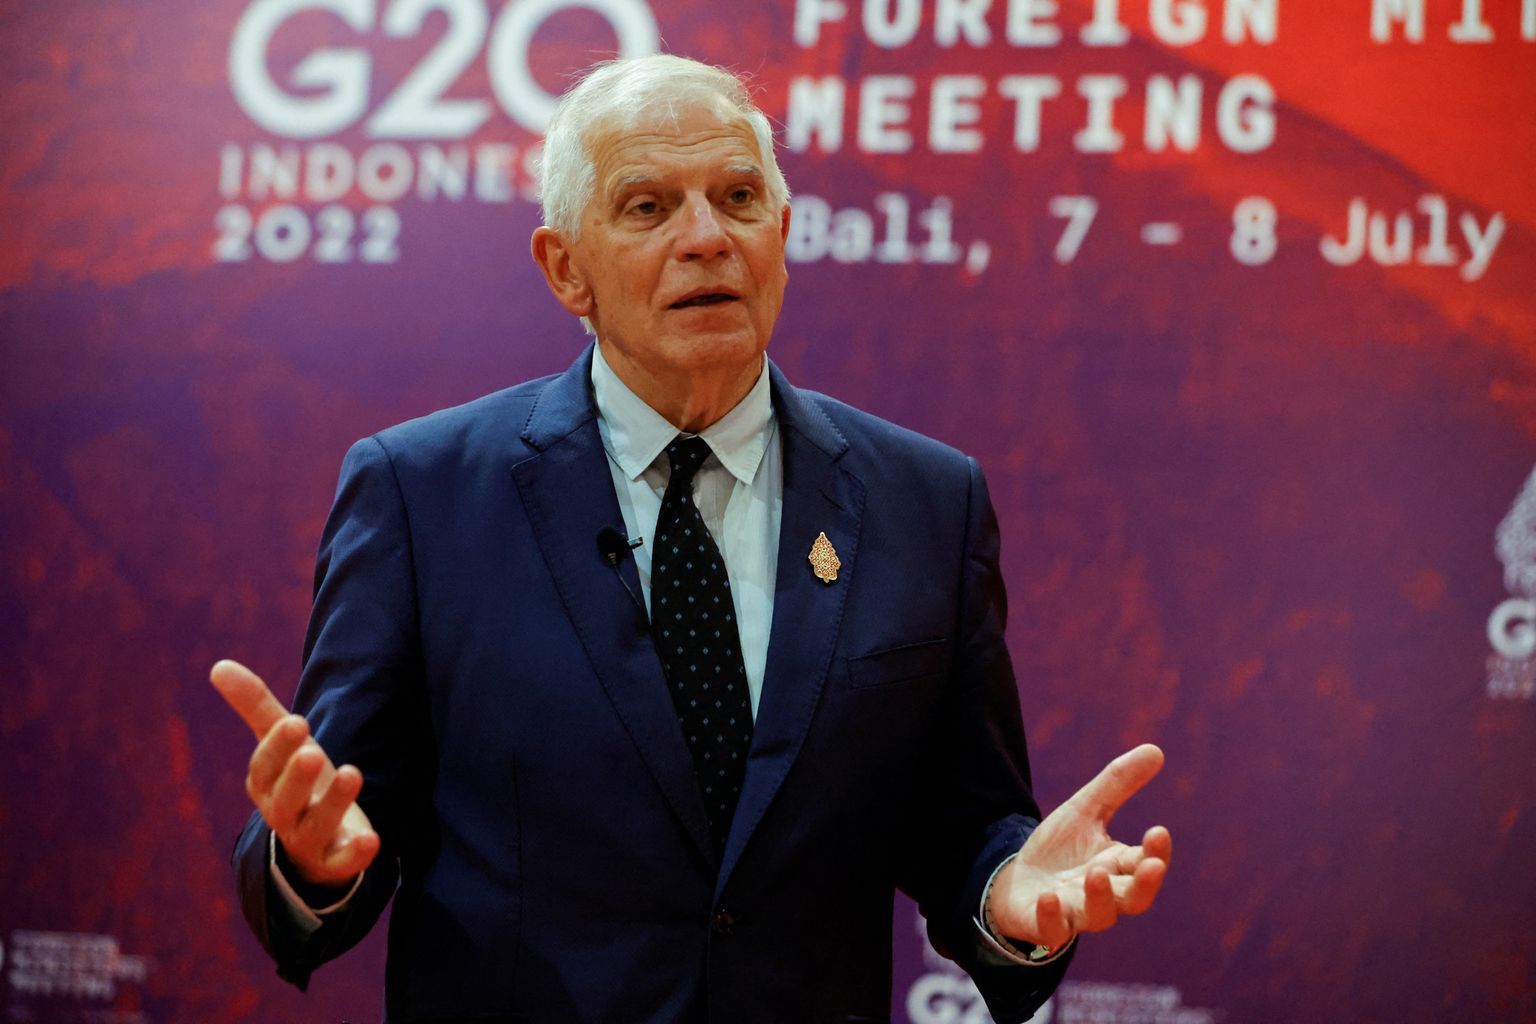 Josep Borrell ühenduse G20 kohtumisel kõnelemas.